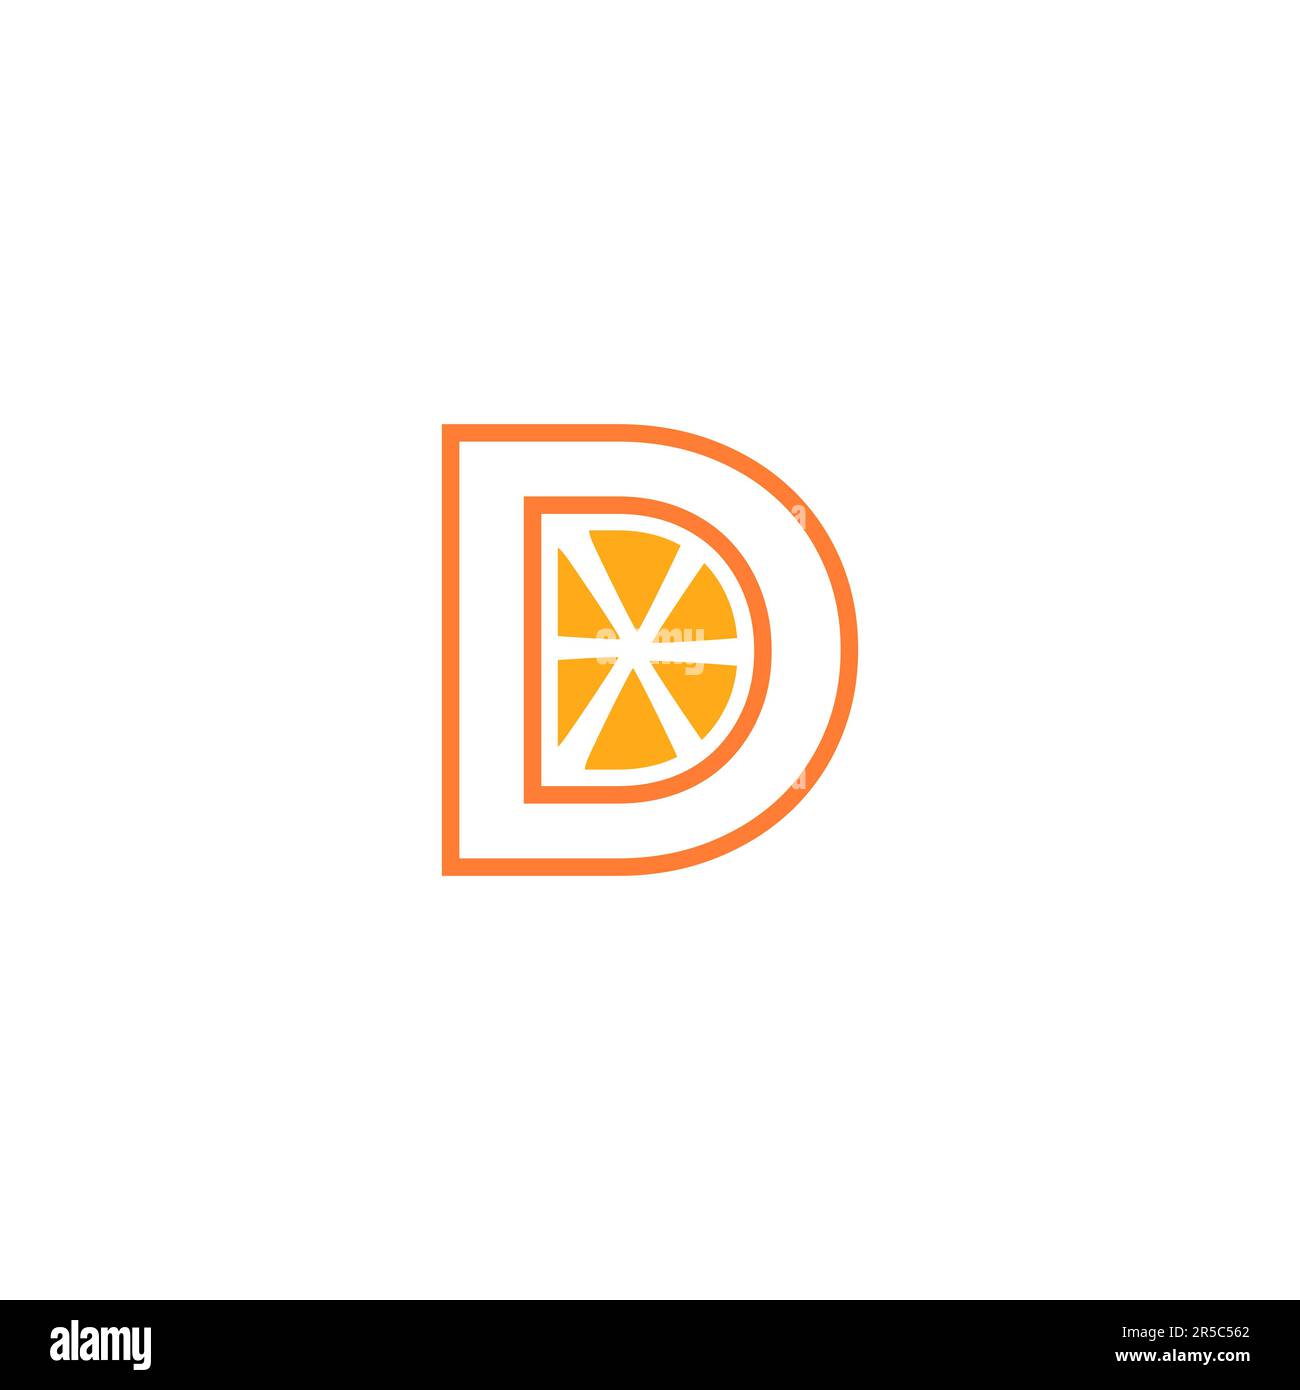 Design mit orangefarbenem D-Logo Stock Vektor